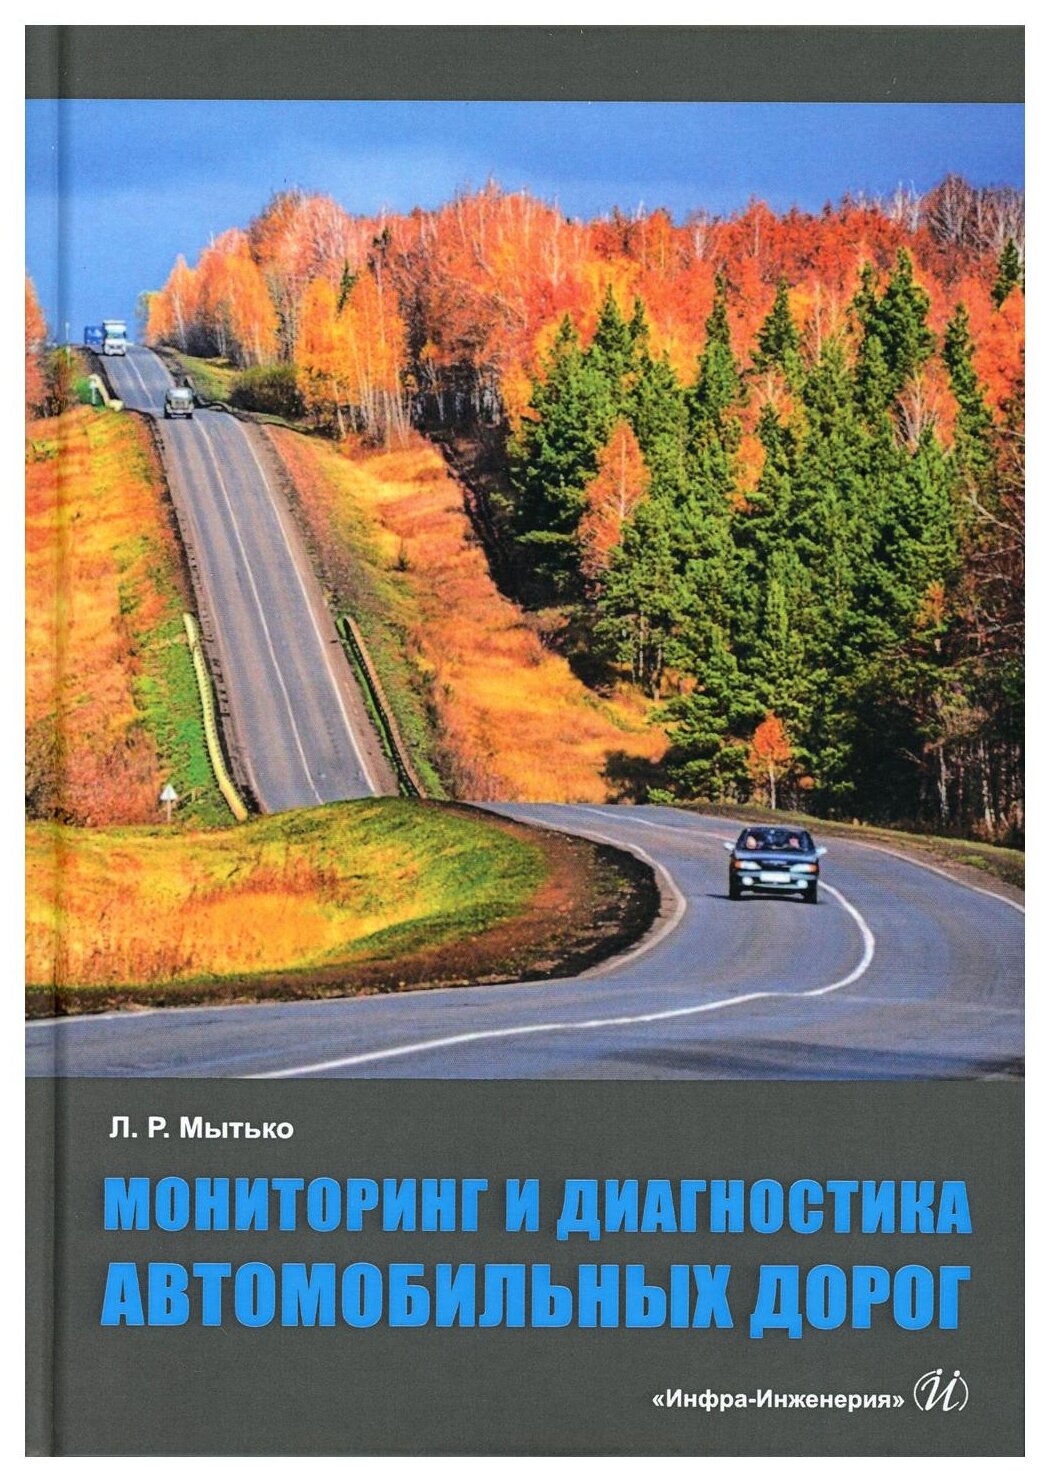 Мониторинг и диагностика автомобильных дорог - фото №1